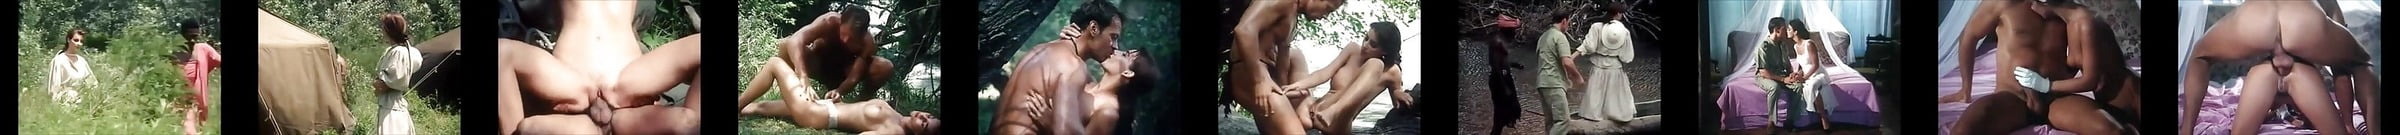 Tarzan Porn Videos Xhamster